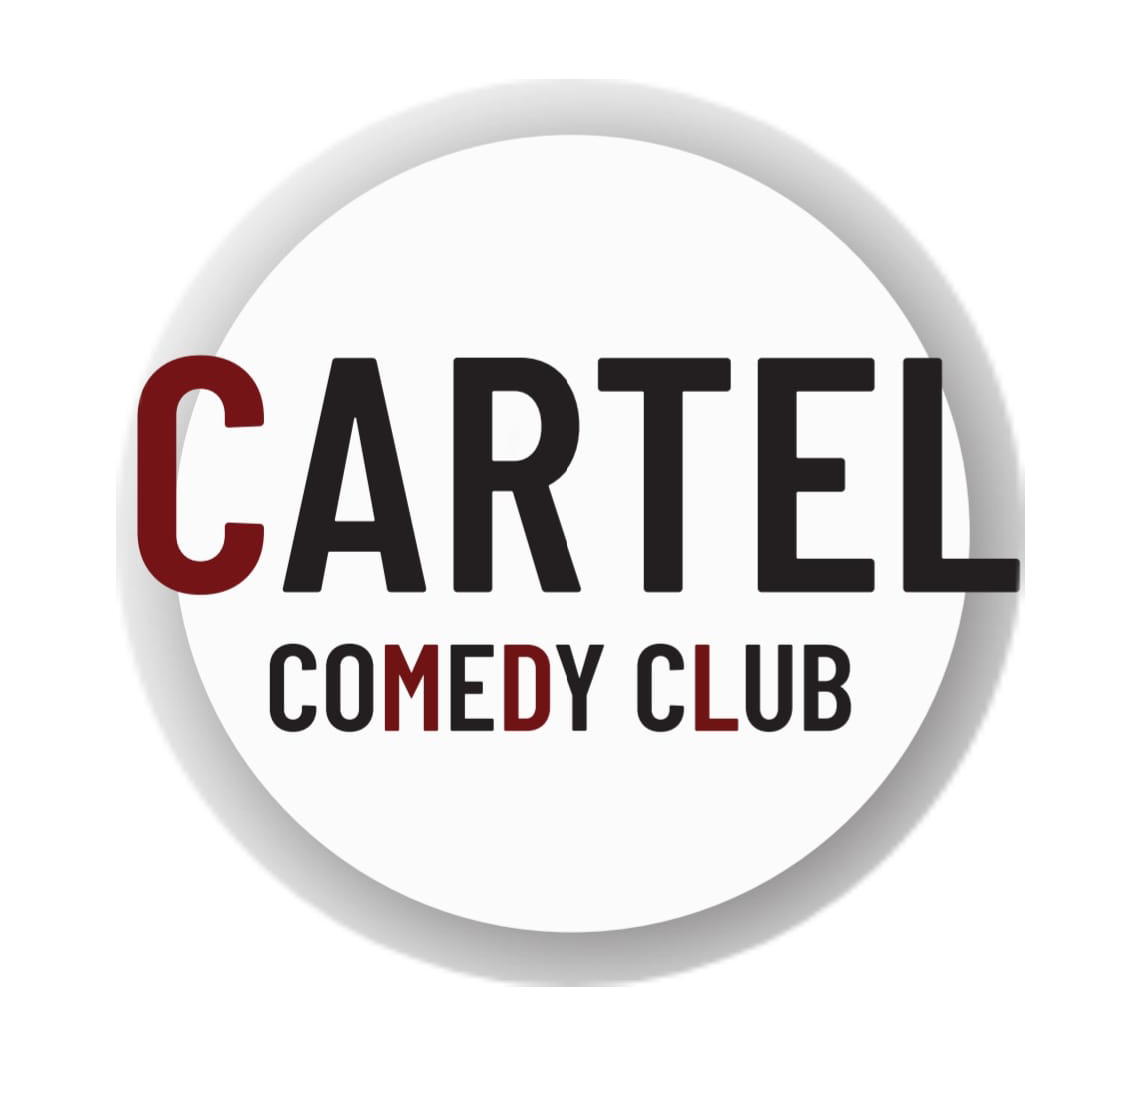 Cartel Comedy Club